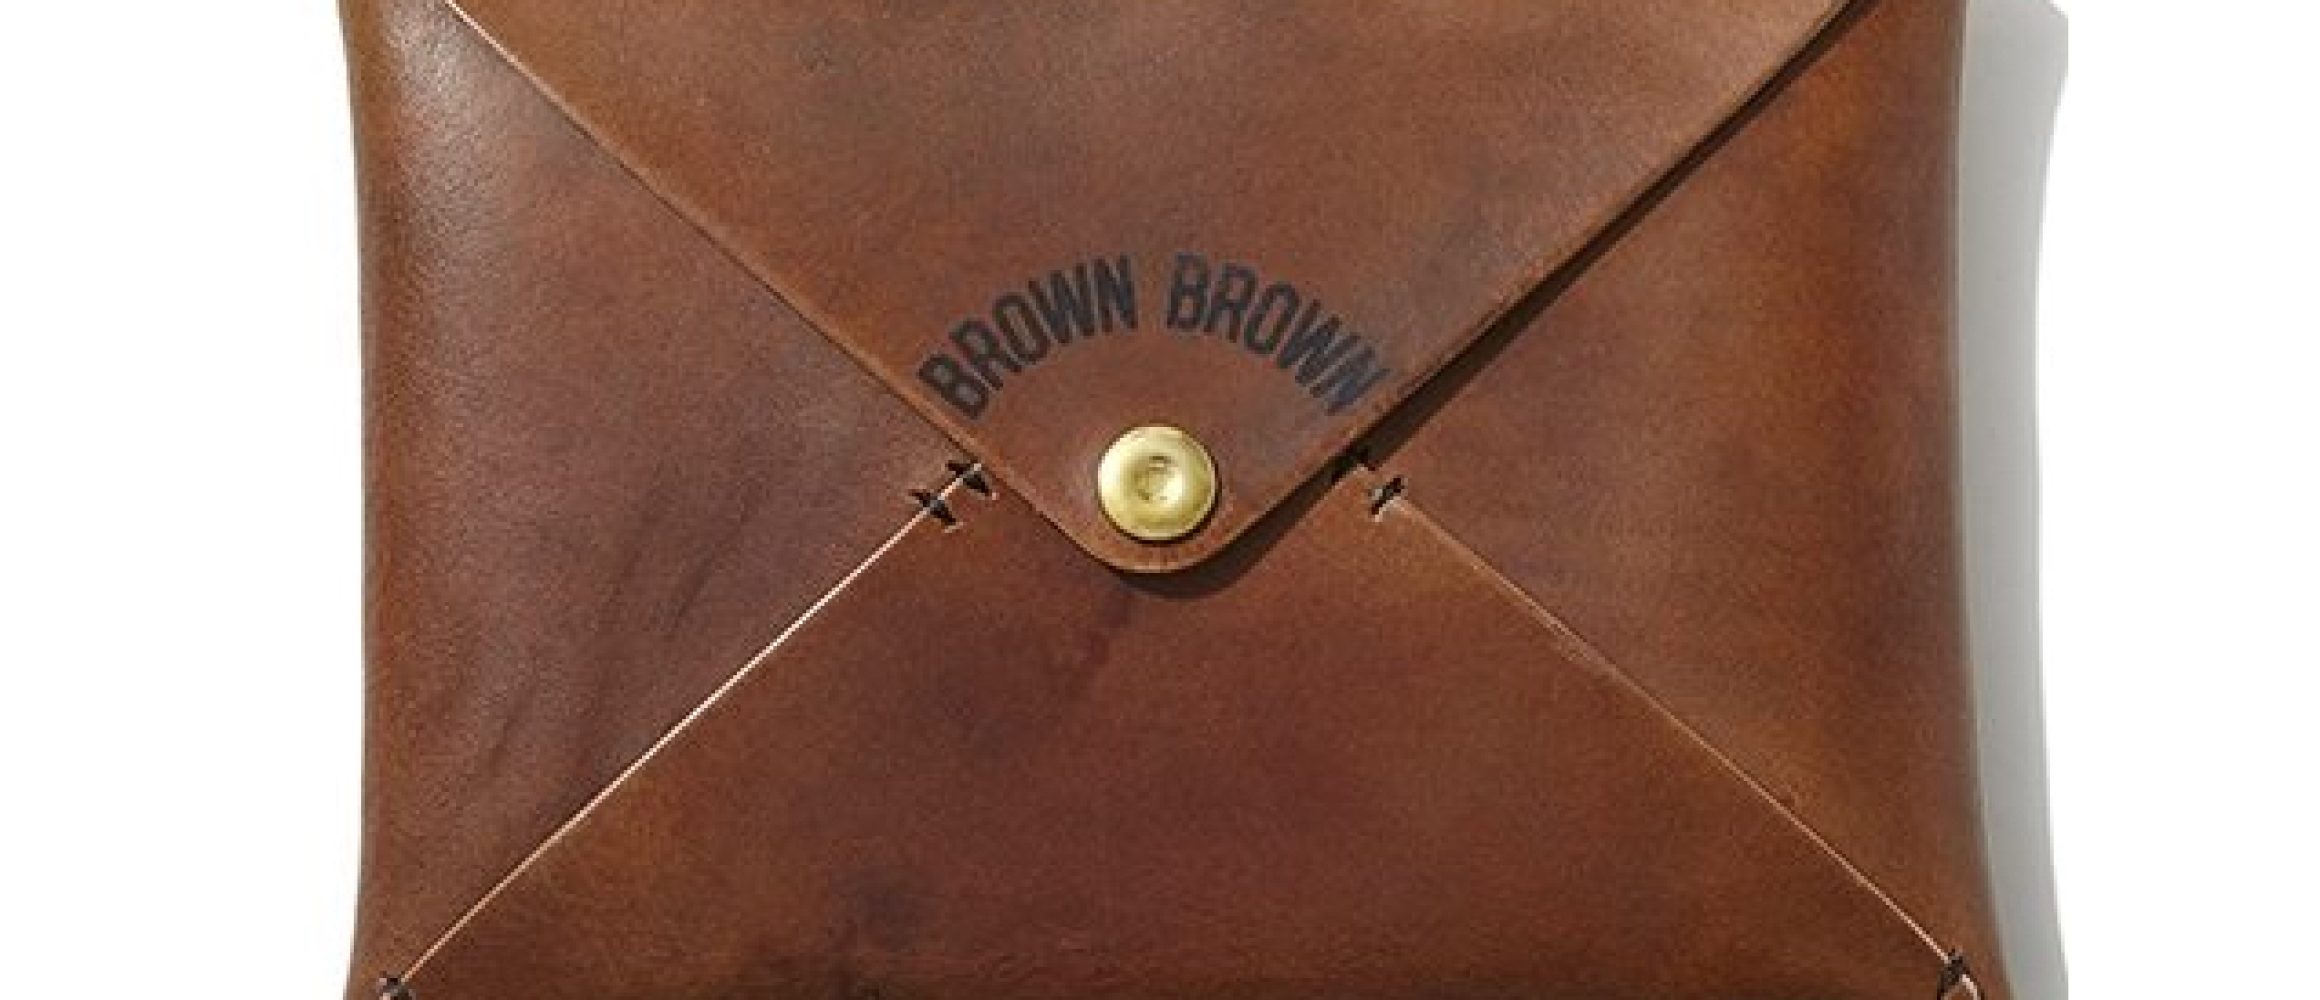 経年変化”にこだわる職人気質のブランド、Brown Brown（ブラウン